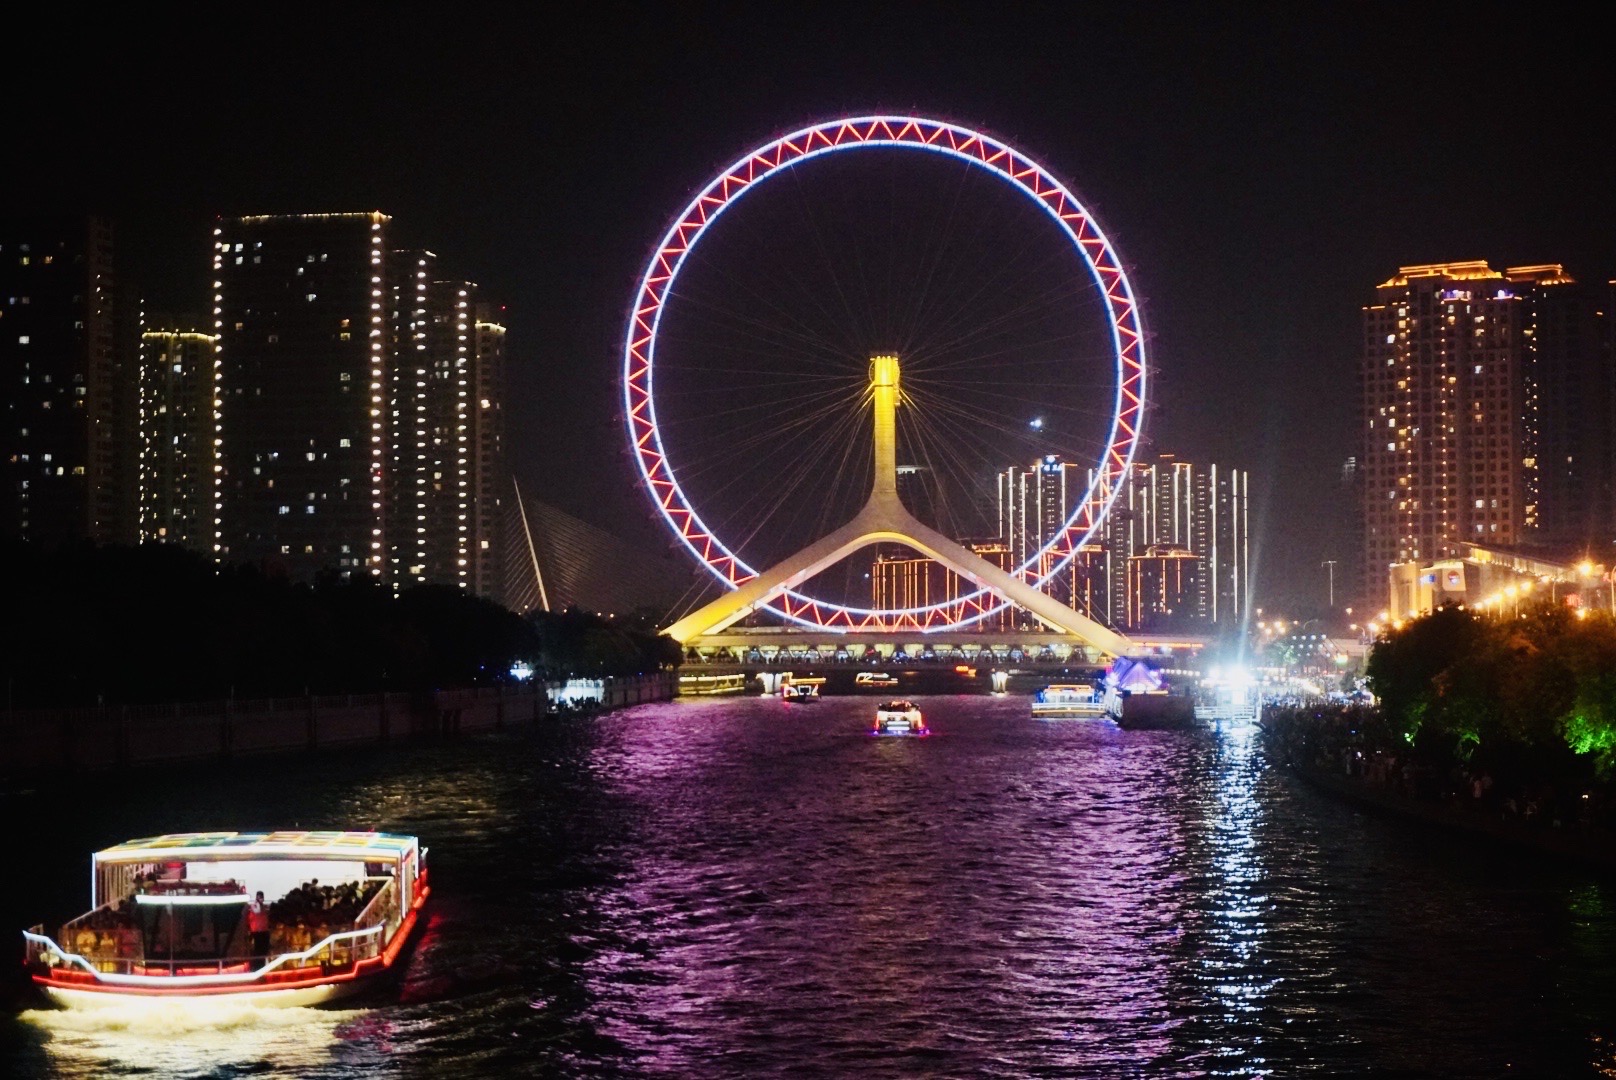 【携程攻略】天津天津之眼摩天轮景点,第二次天津之旅第二次为摩天轮